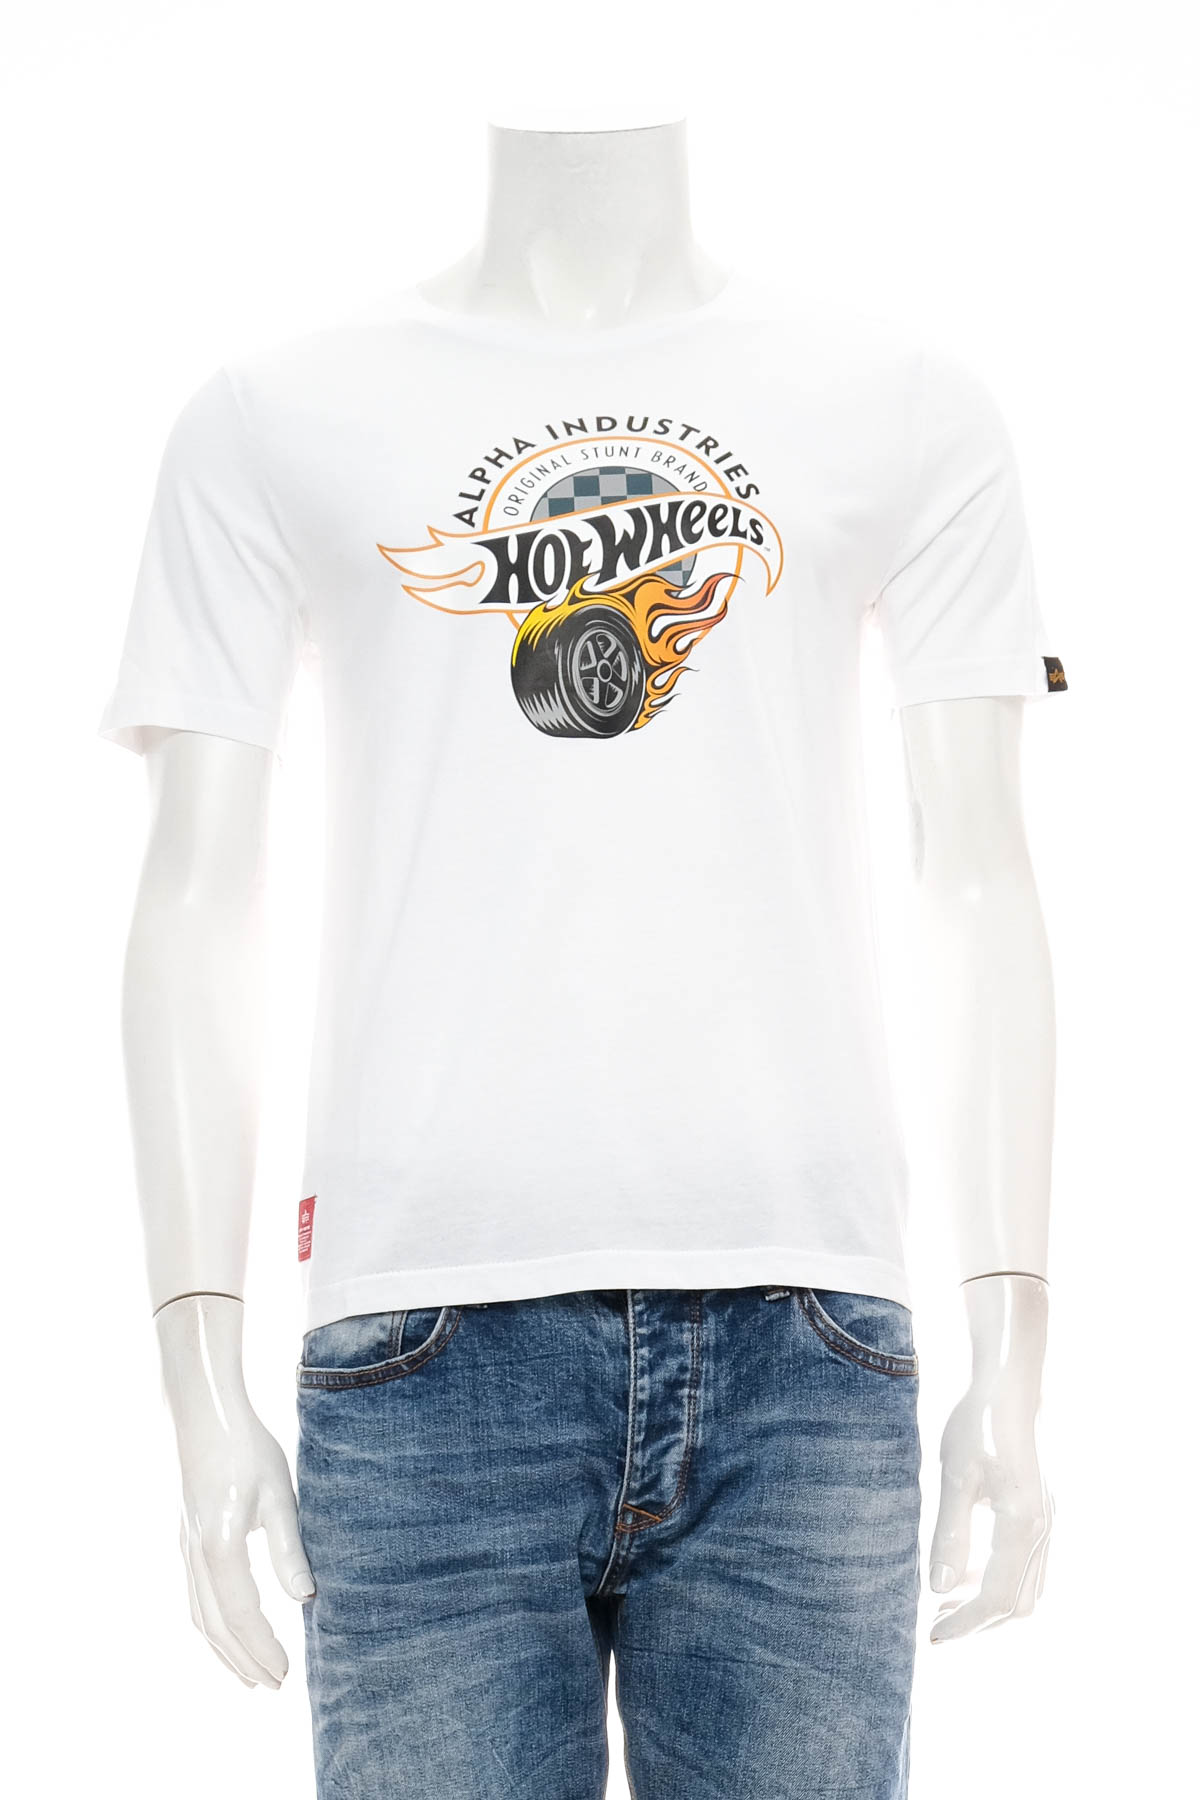 Koszulka dla chłopca - Alpha Industries Hot Wheels - 0